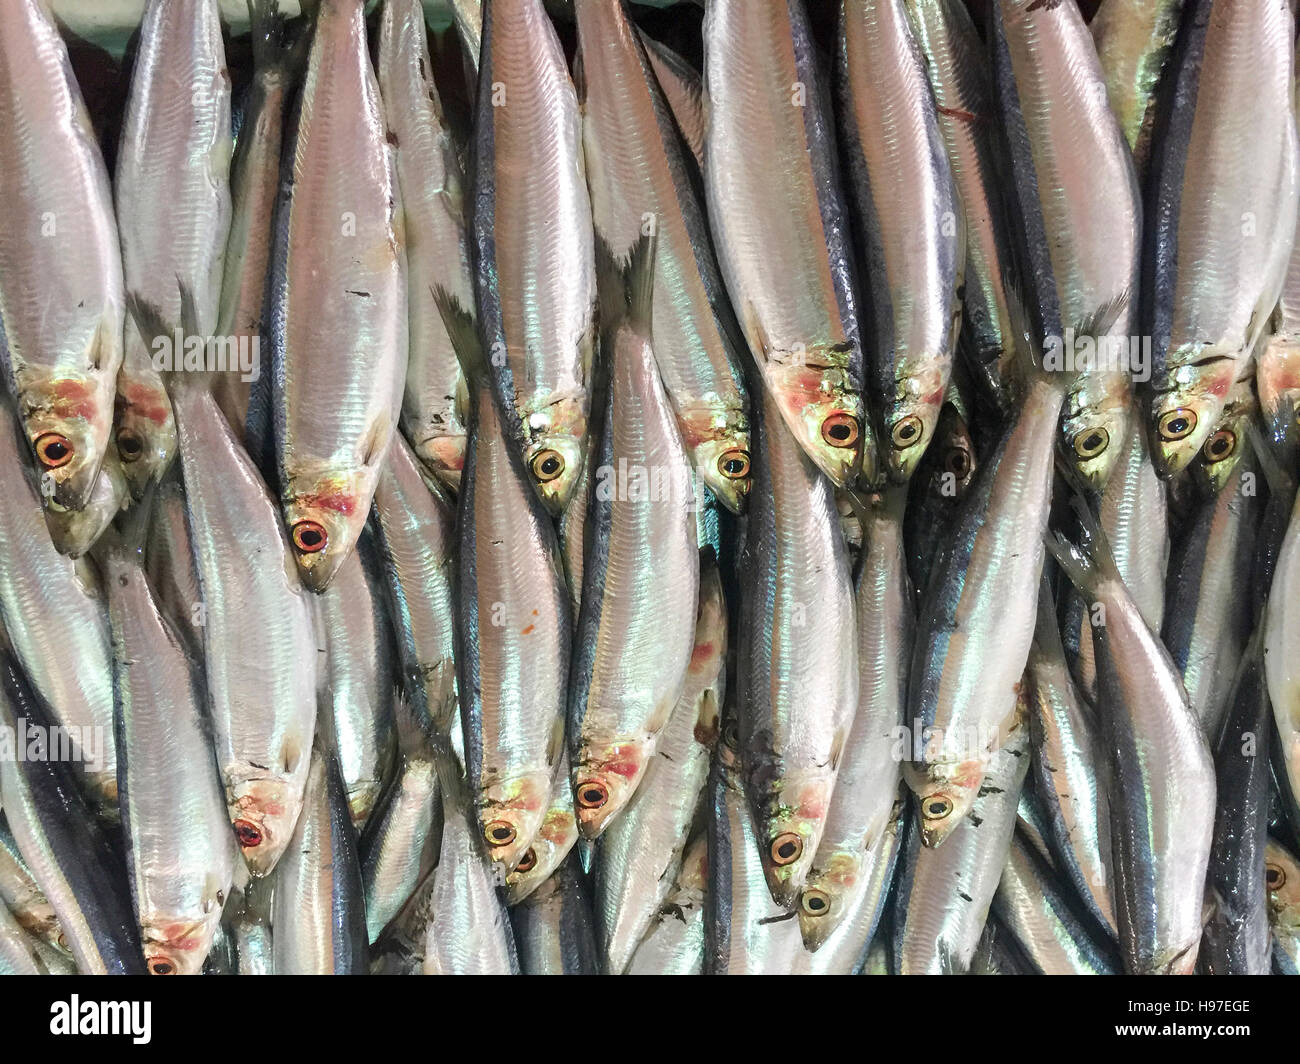 Nahaufnahme von frischen Sardinen Fisch oder lokalen namens JIkan Tambah auf dem Display am Fischmarkt. Stockfoto